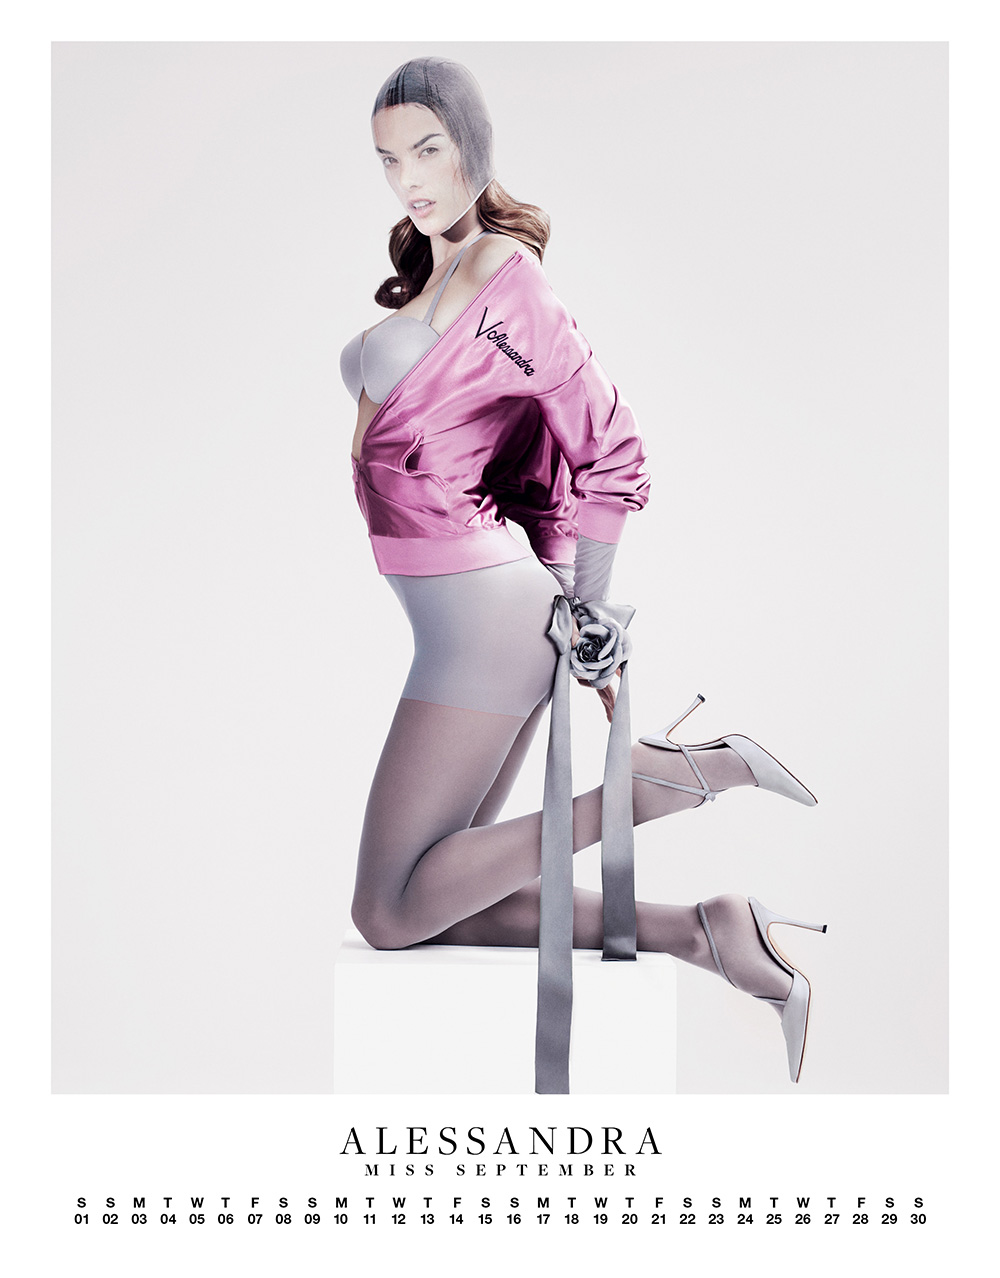 Alessandra-Ambrosio-posed-Carine-Roitfeld-edited-spread-VMAN